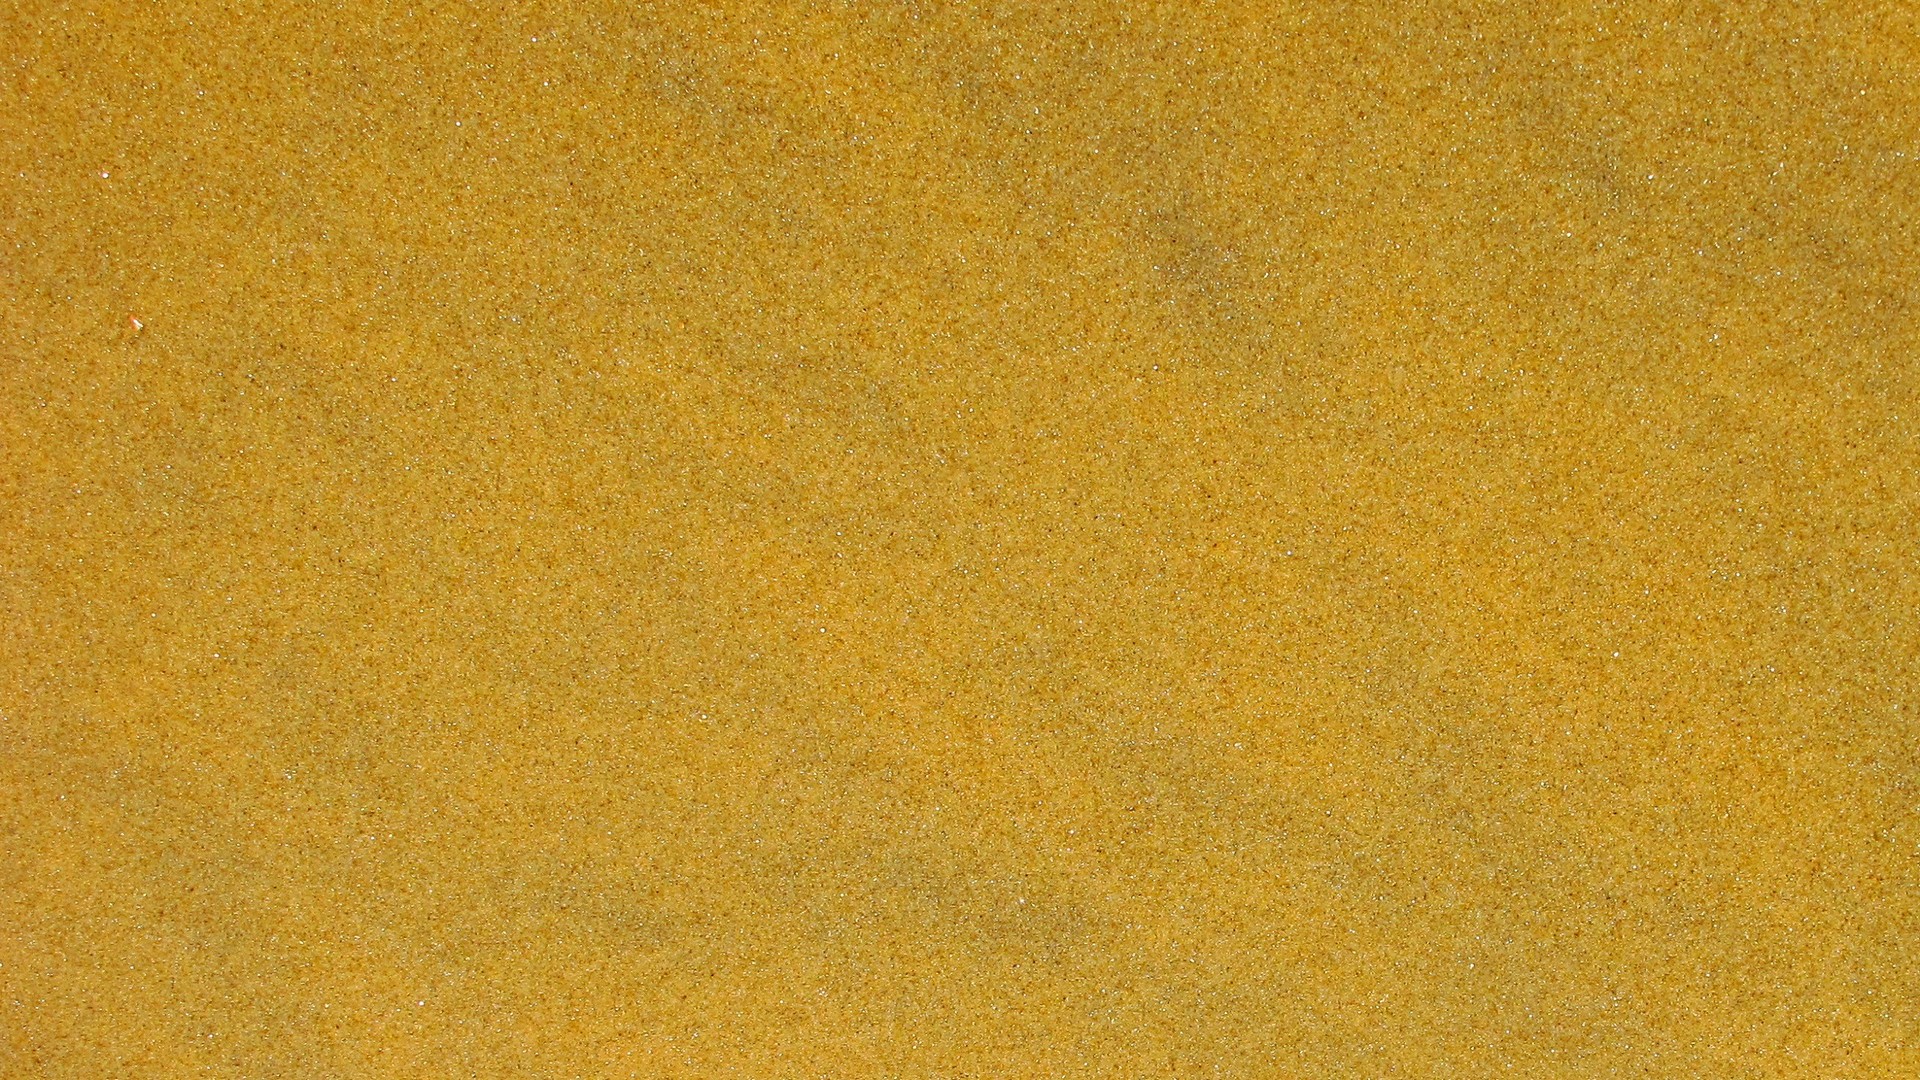 Plain Gold Desktop Backgrounds 1920x1080